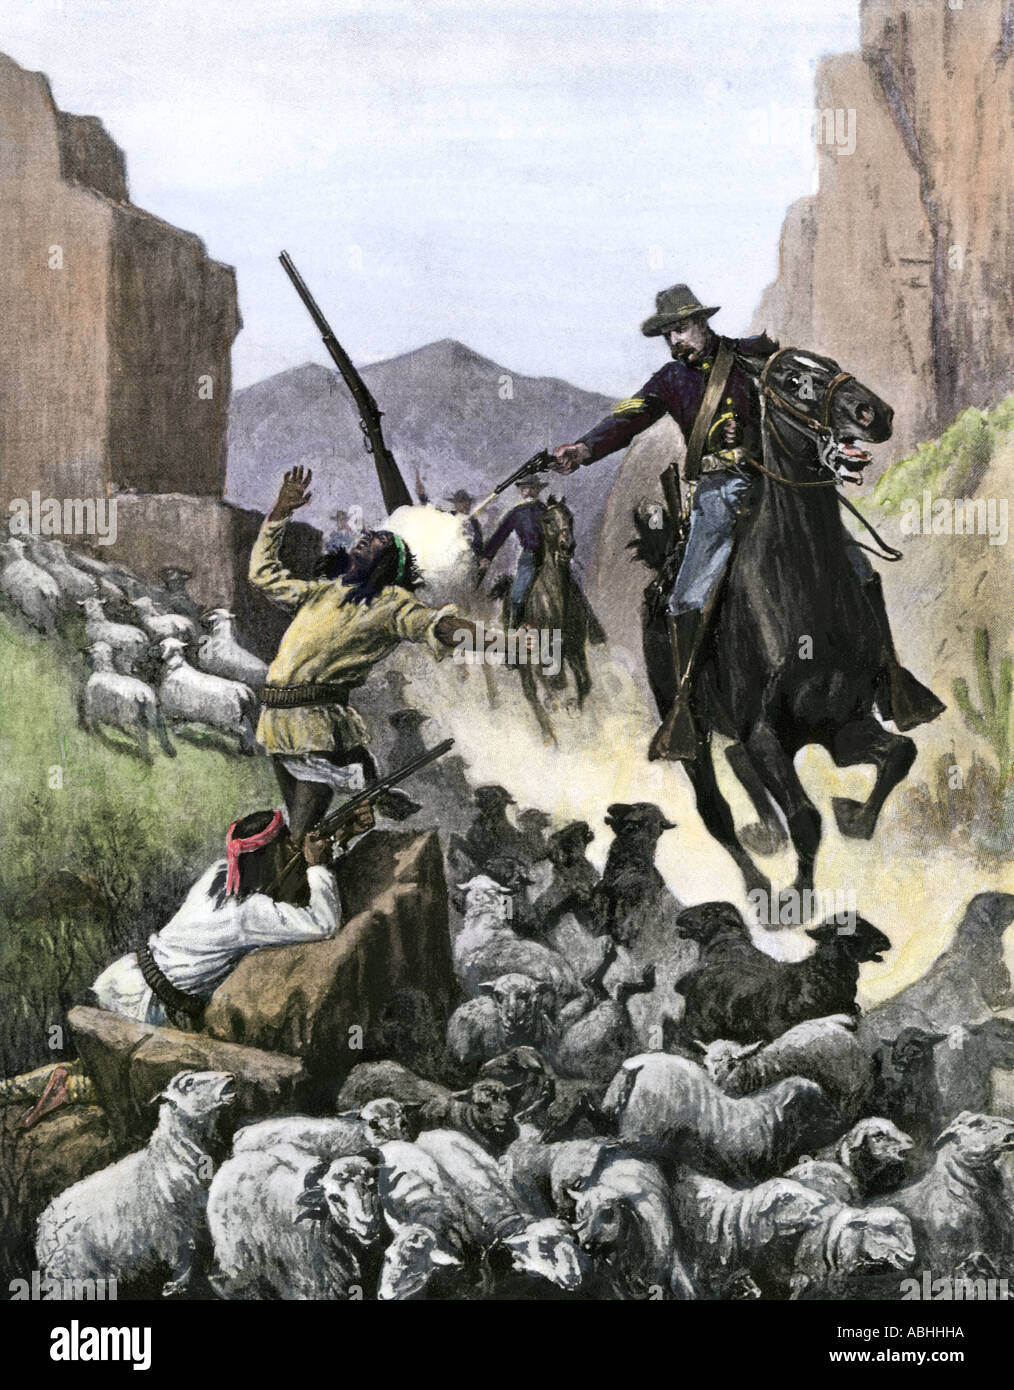 US-Kavallerie Soldat schießen Apache Schafe Hirten in einem Canyon 1800. Hand - farbige Raster eines Zogbaum Abbildung Stockfoto